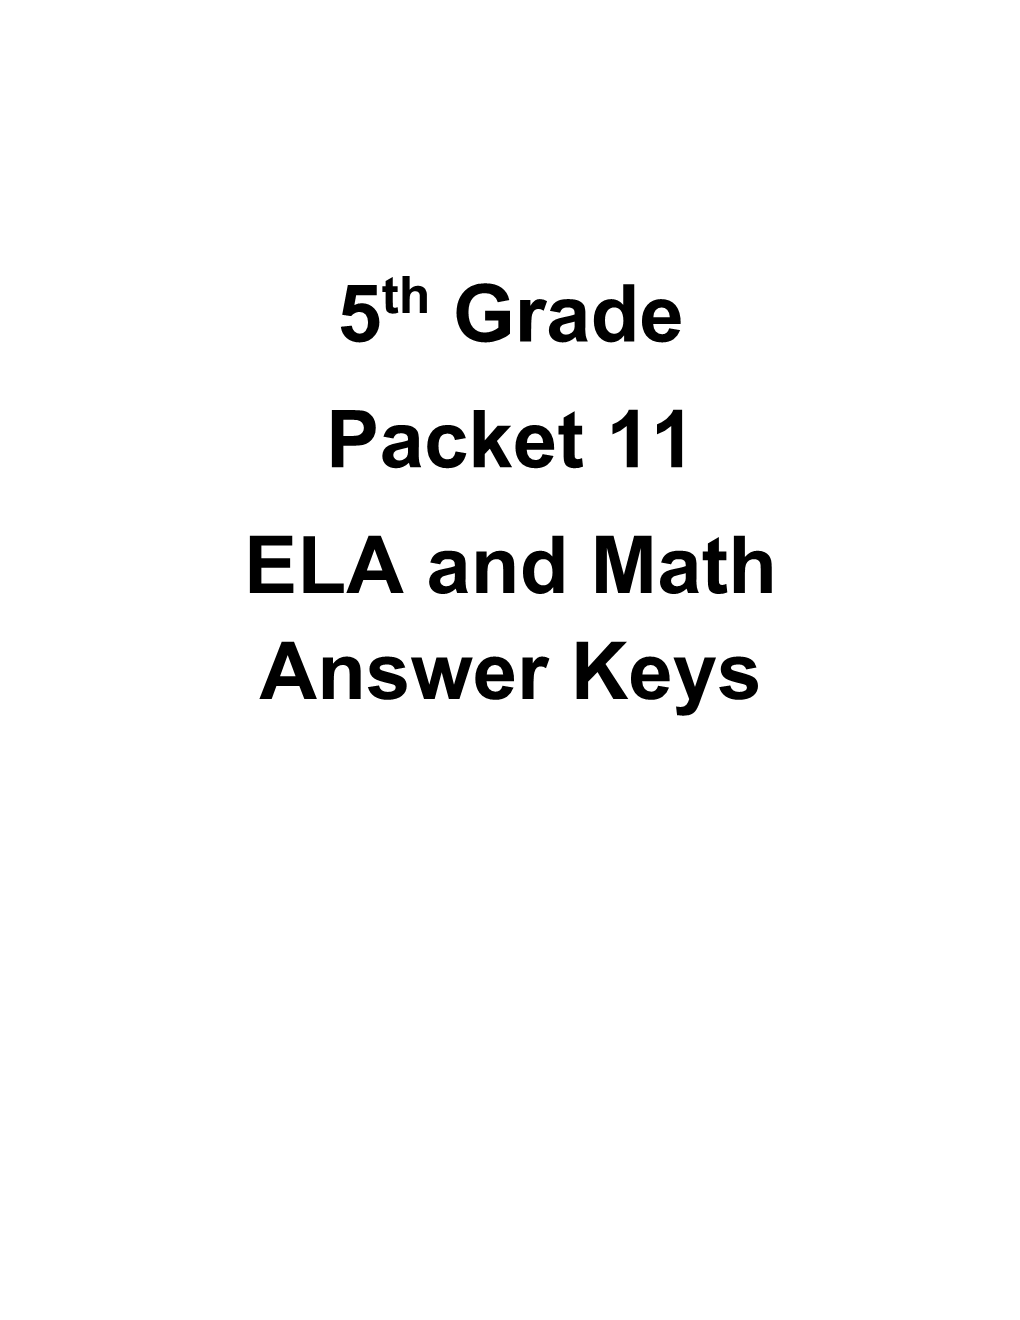 5 Grade Packet 11 ELA and Math Answer Keys